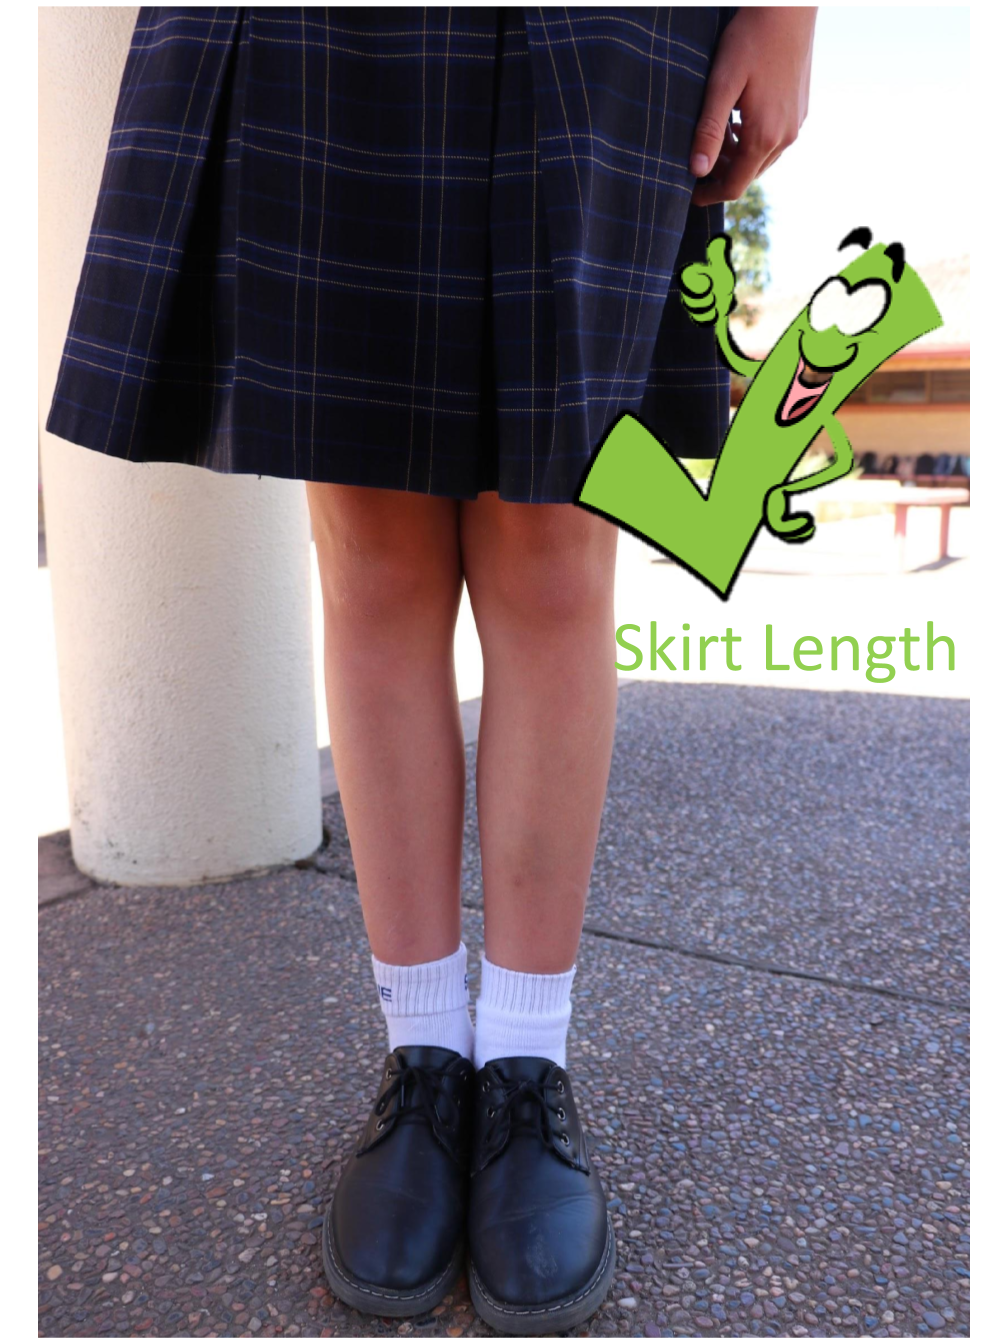 Skirt Length Poster.pptx